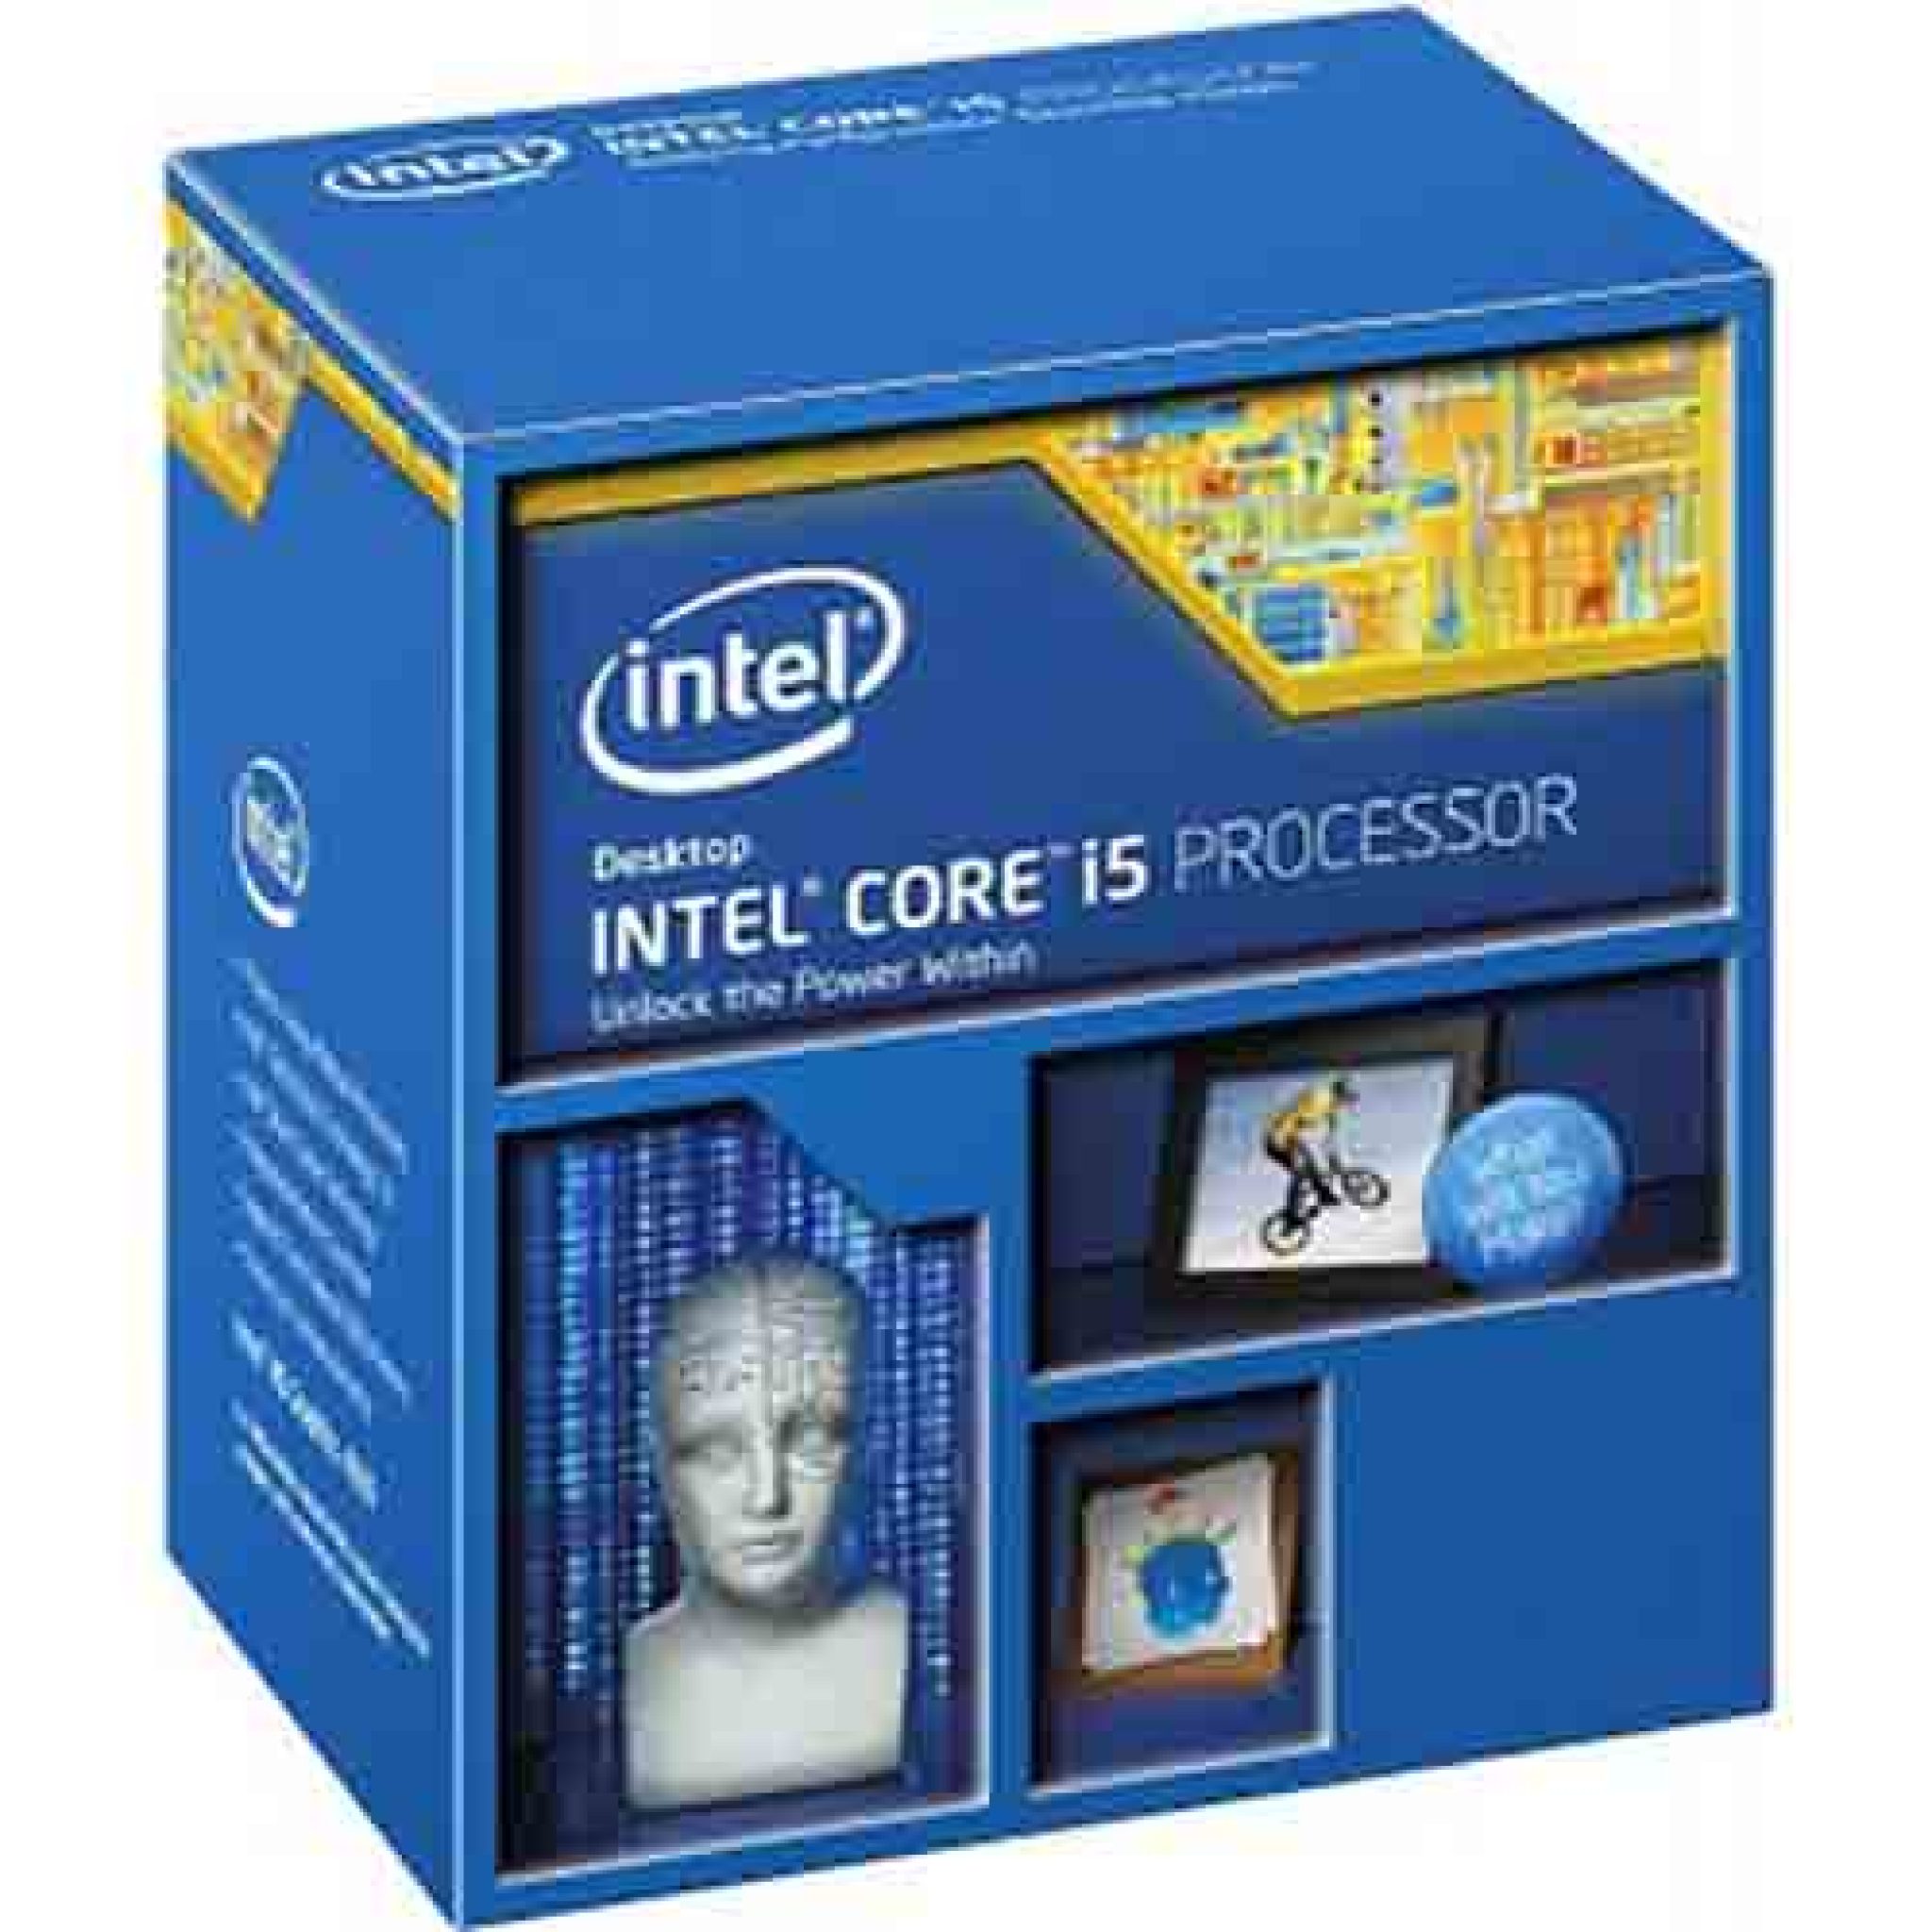 Intel Core i5-4590 6M Cache 3.7 GHz Processor Price in Pakistan 2020